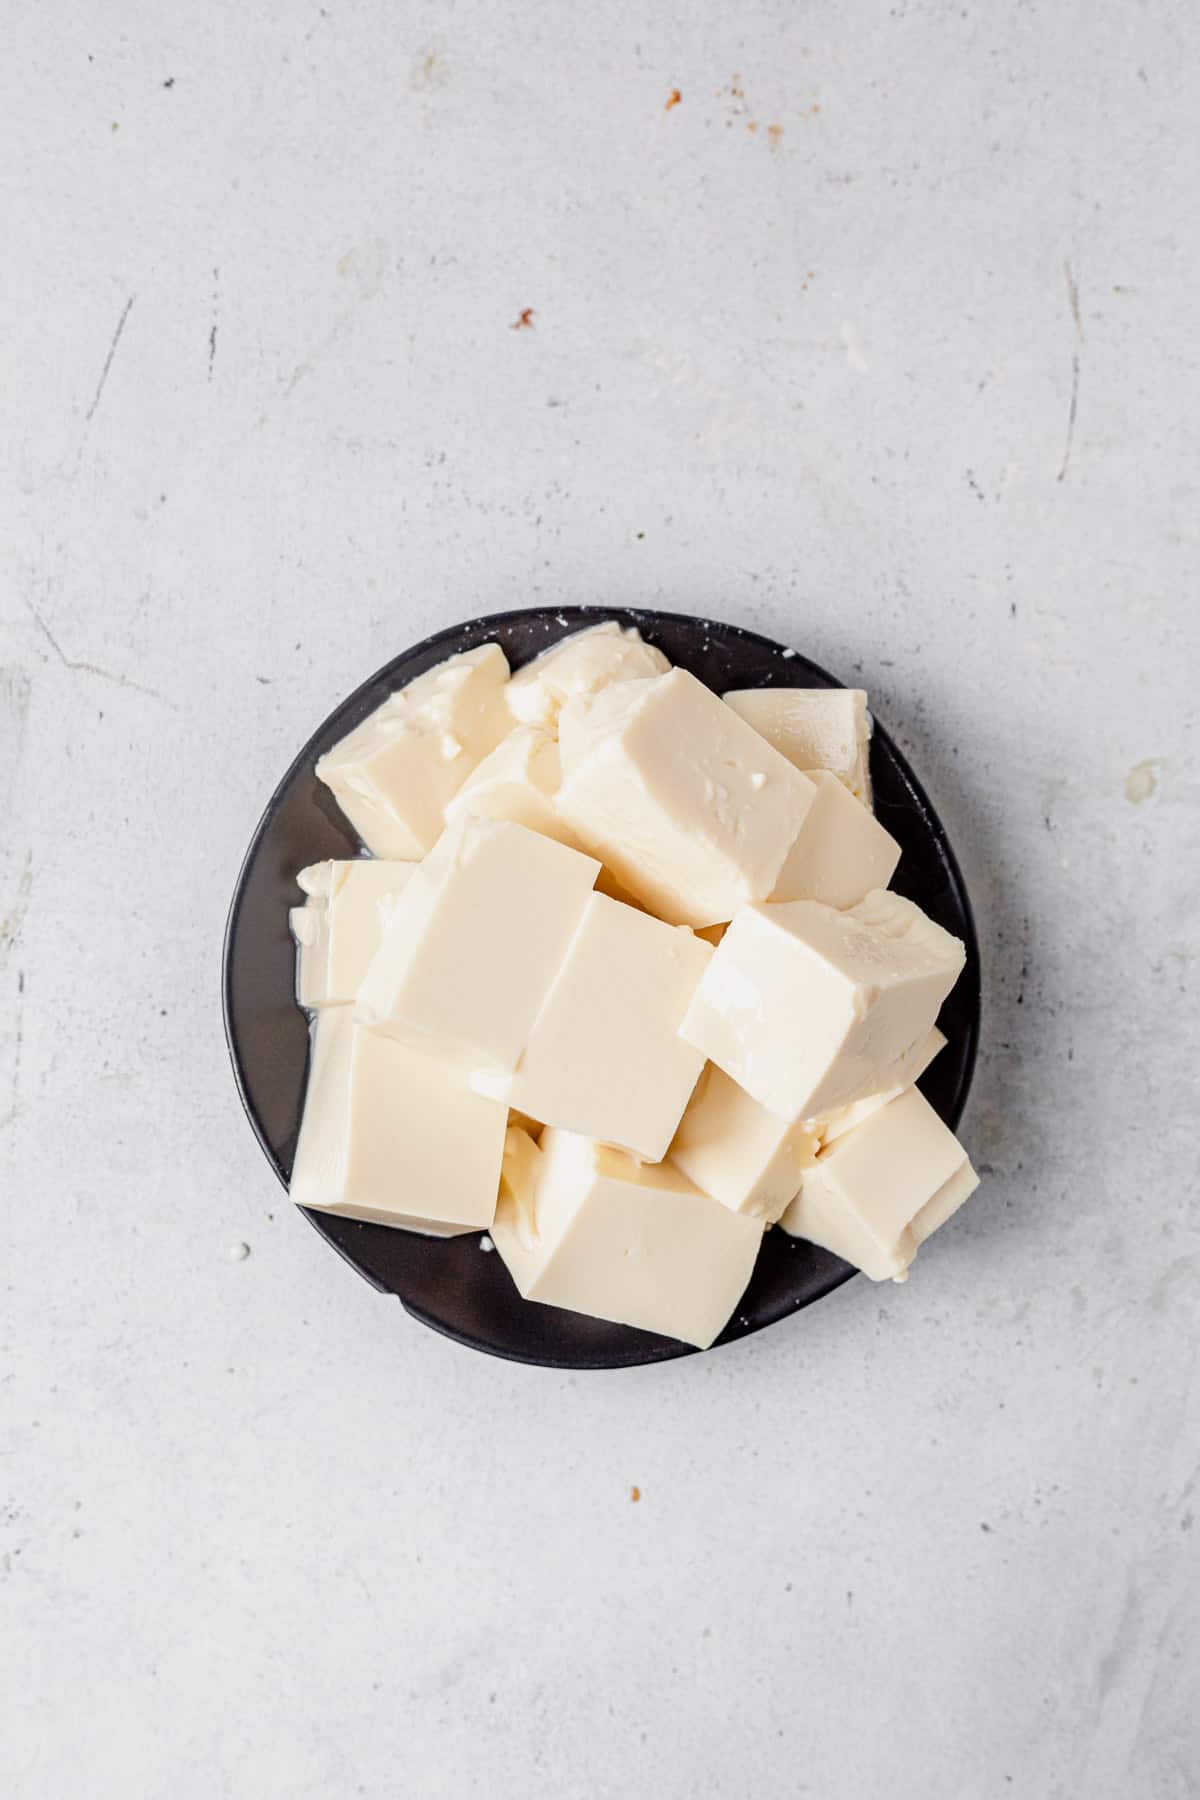 blocks of tofu on a plate